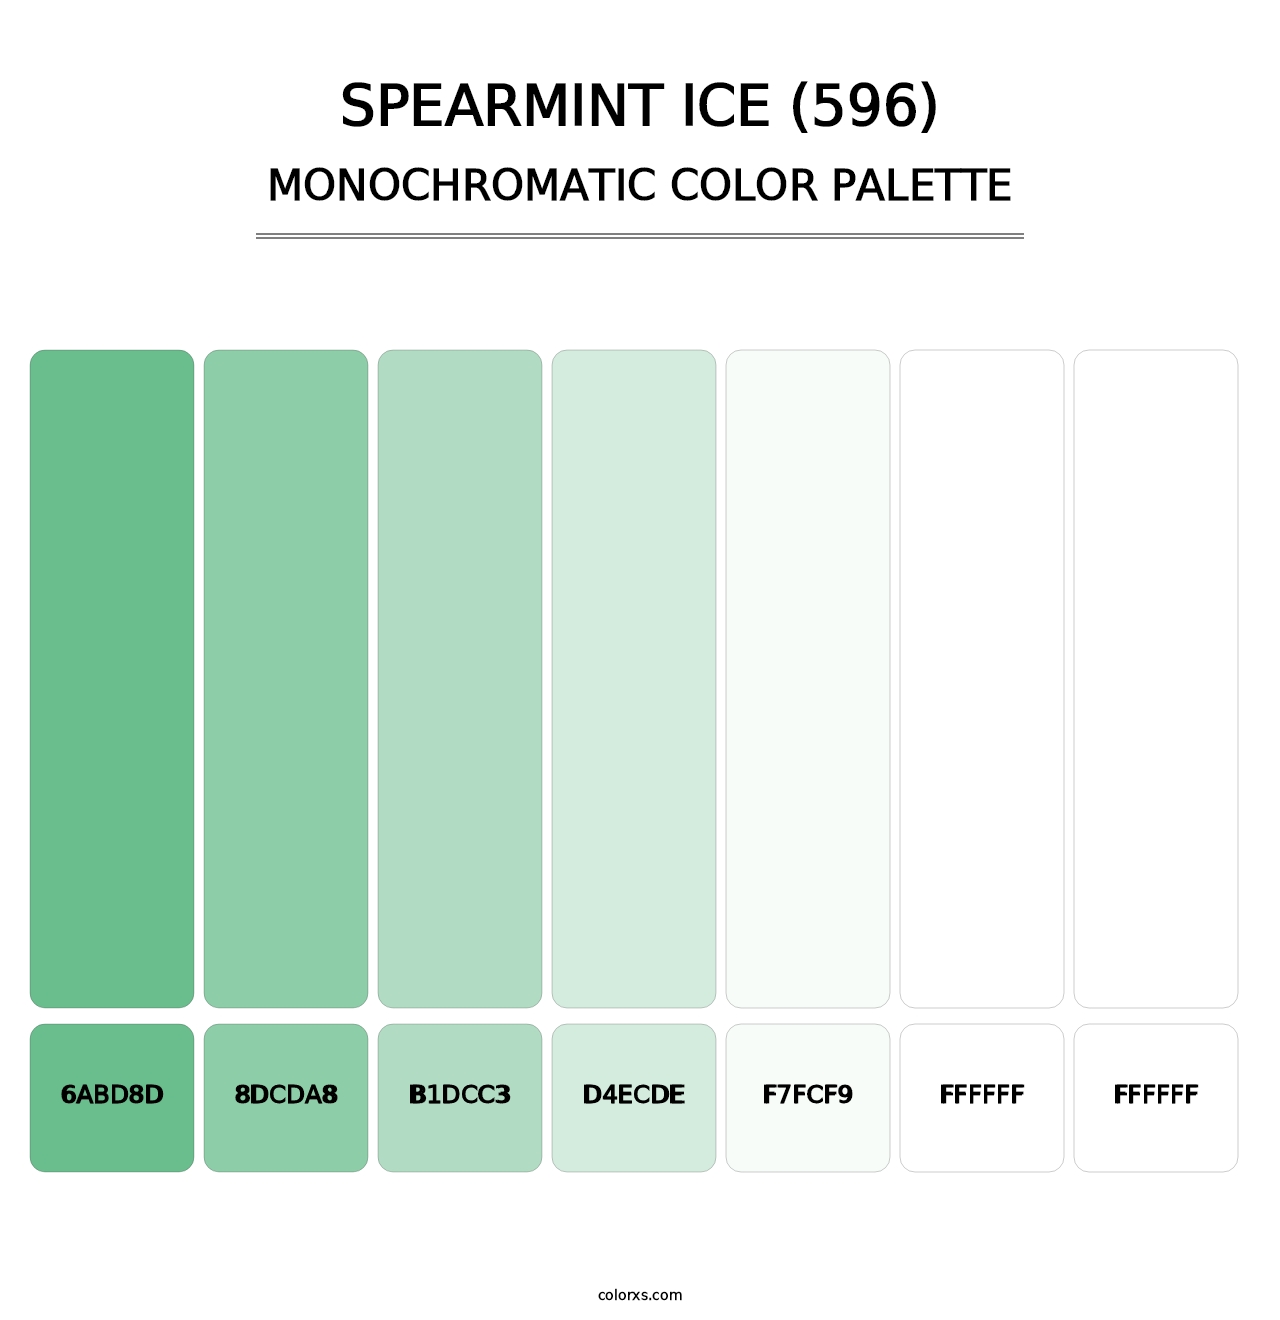 Spearmint Ice (596) - Monochromatic Color Palette